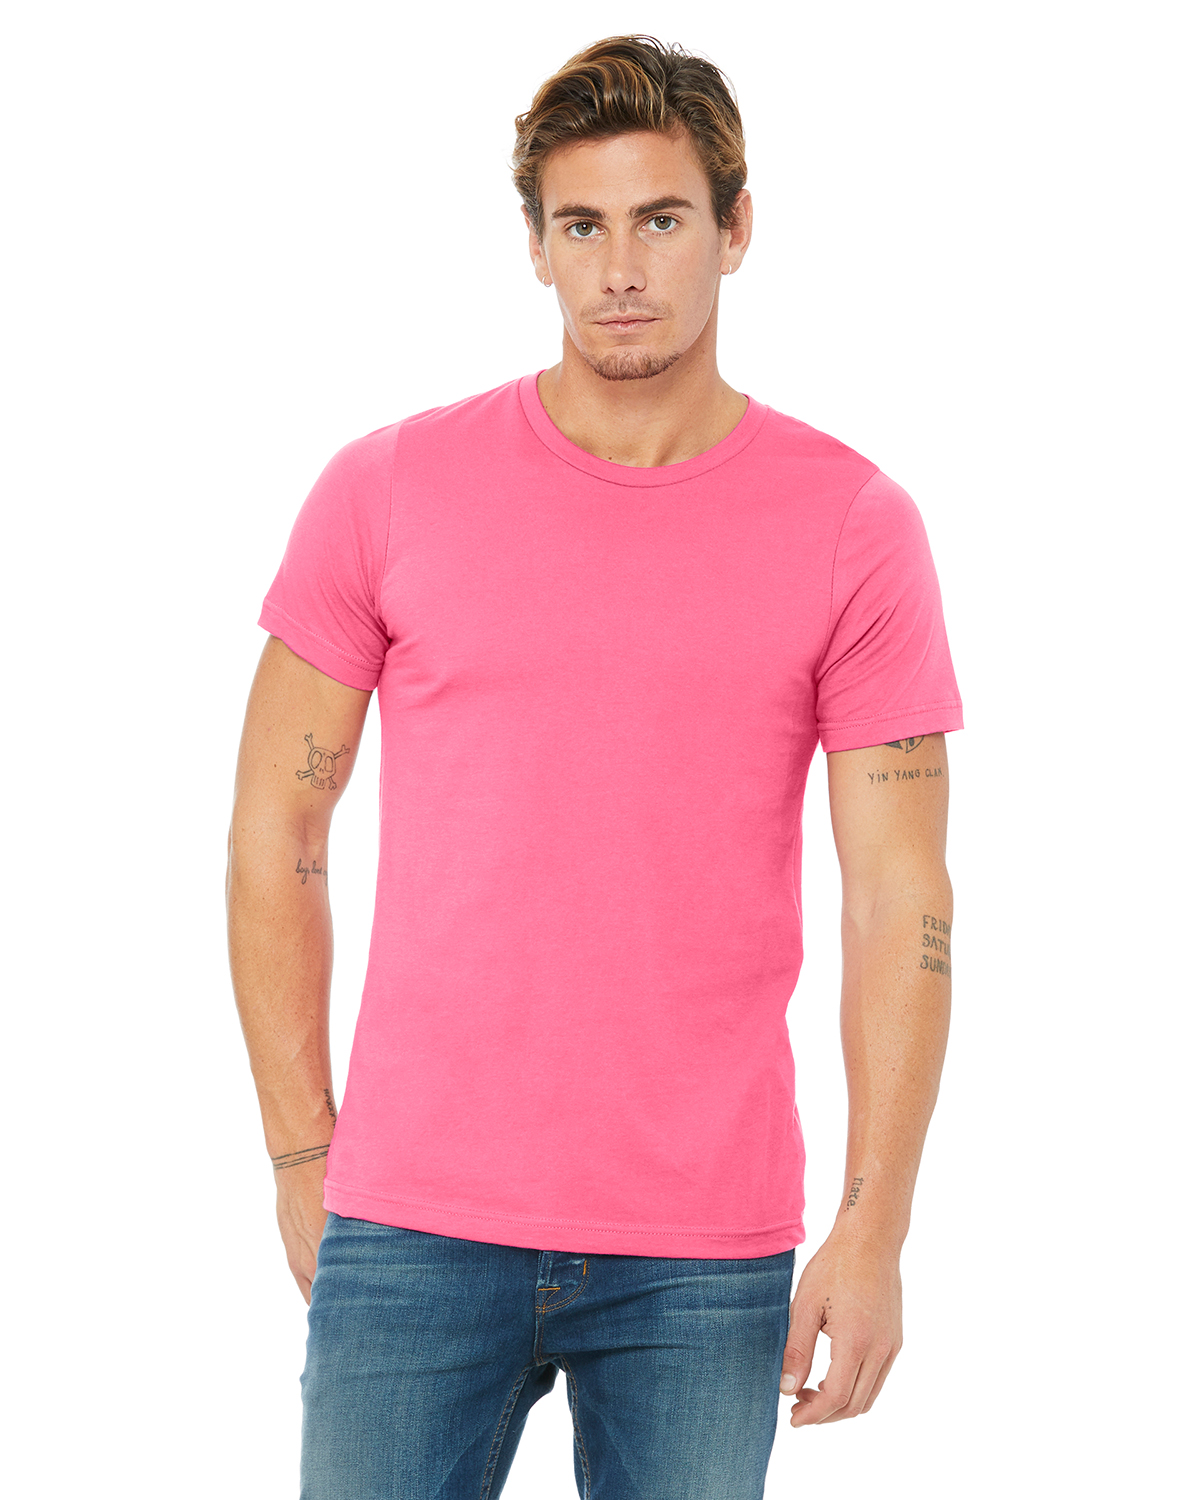 Twin Cities Graffiti Shirt Pink Unisex Jersey Short Sleeve Tee